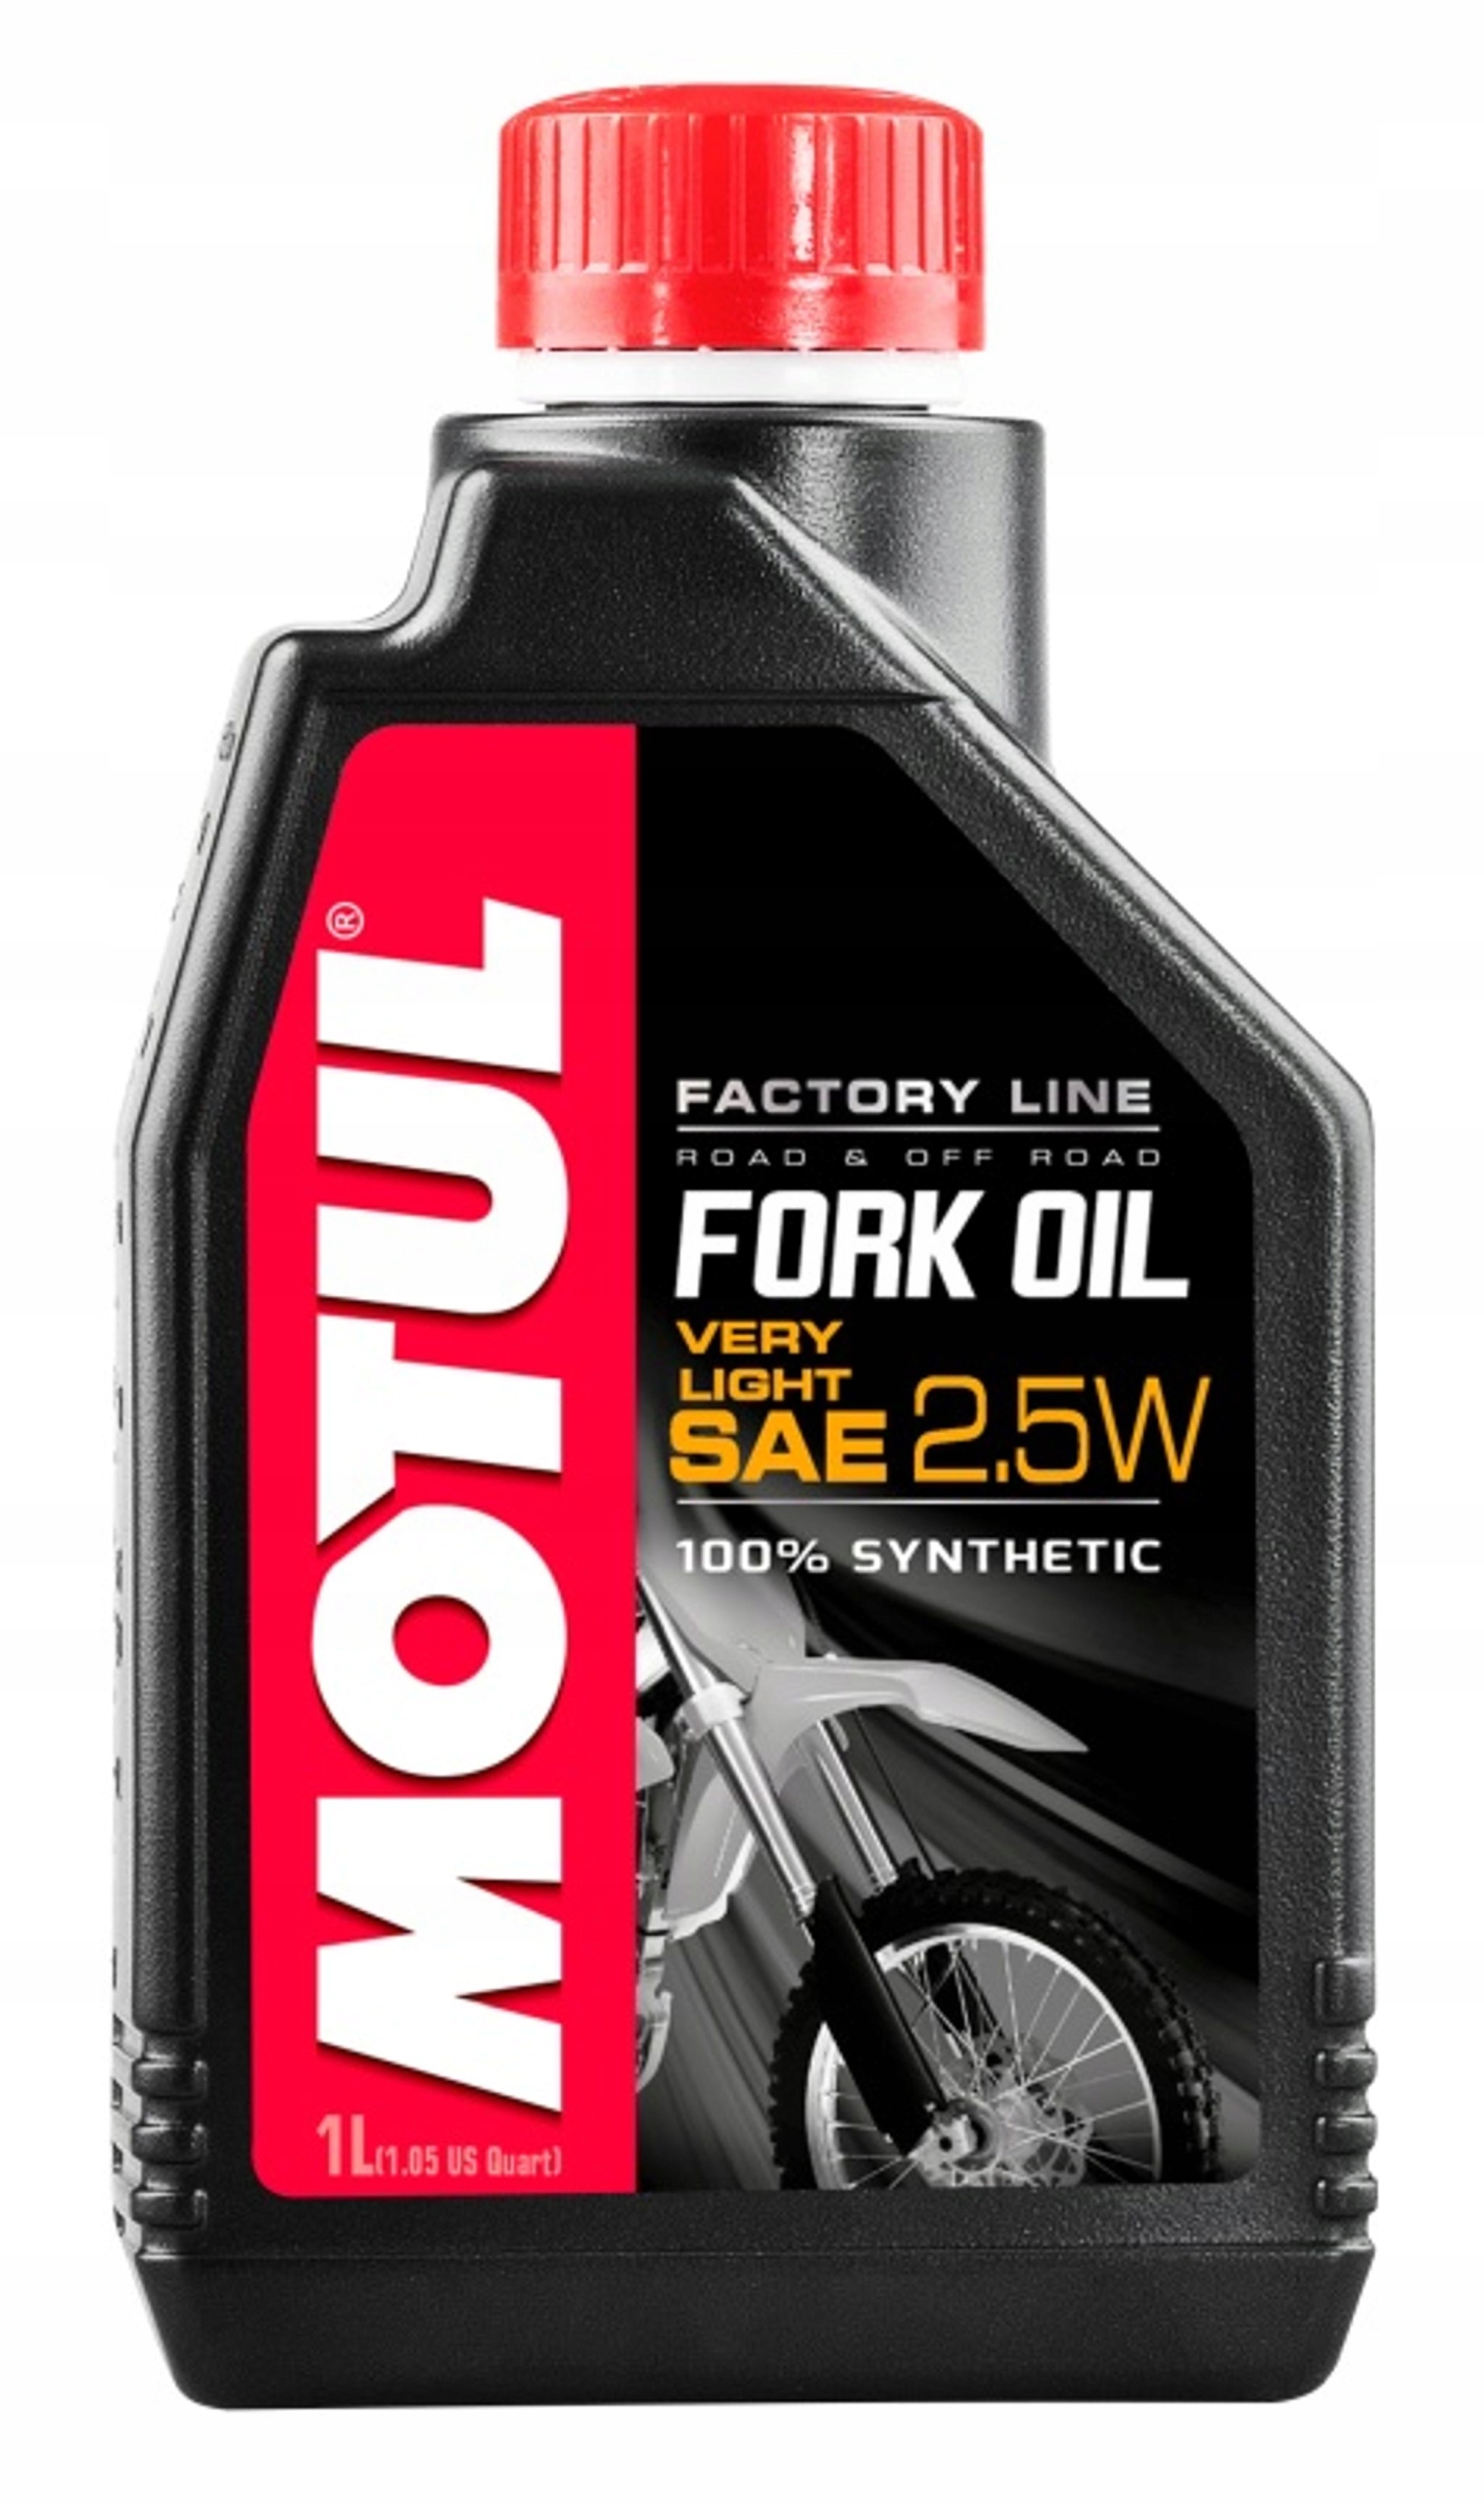 Масло fork oil. Fork Oil Factory line Light 5w. Масло вилочное Motul. Вилочное масло. Проверить масло Motul fork Oil 10w Medium 101125.